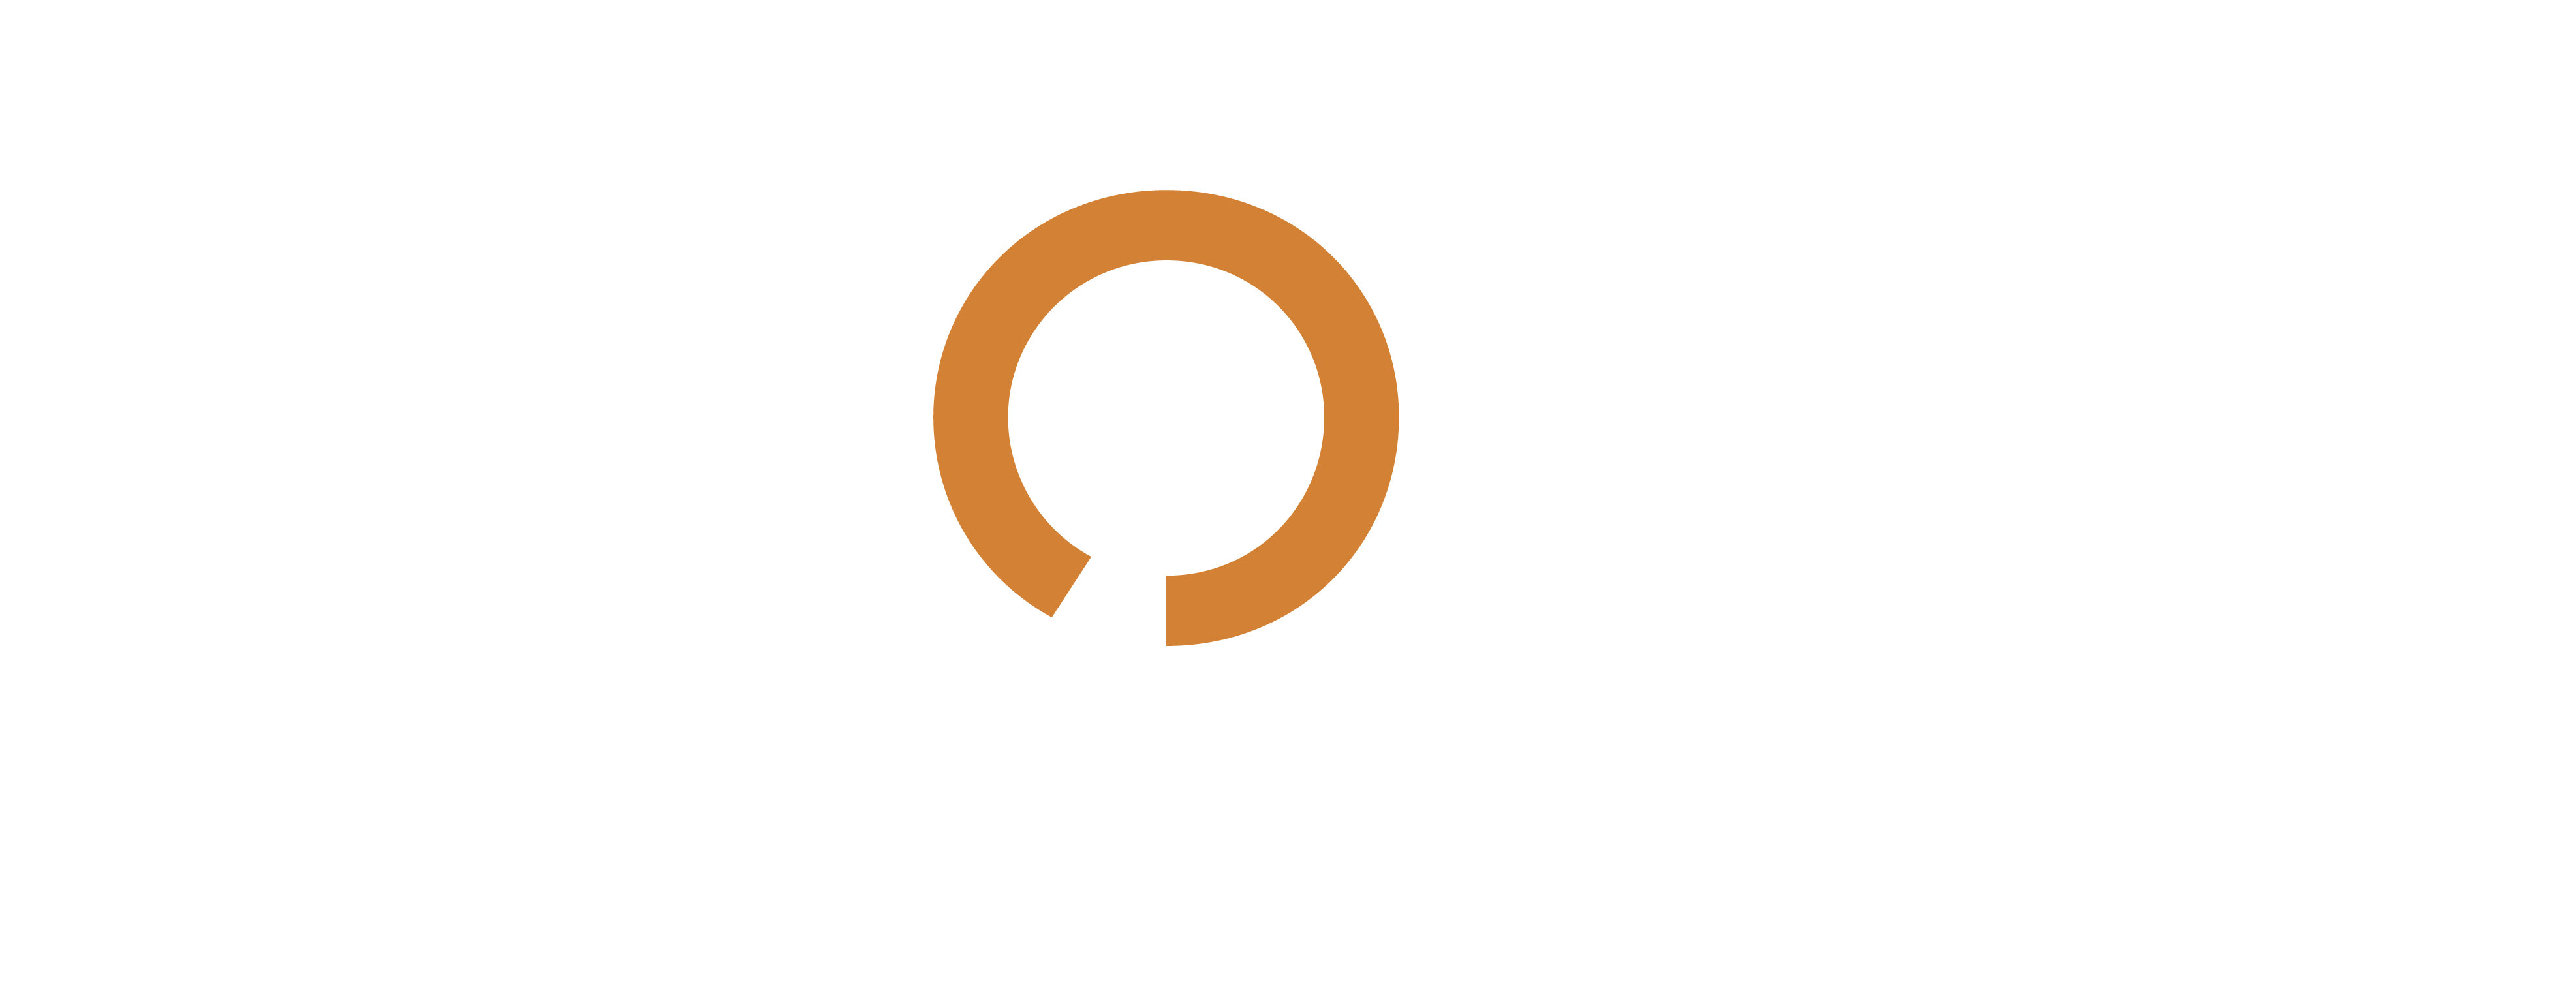 Evolito Logo